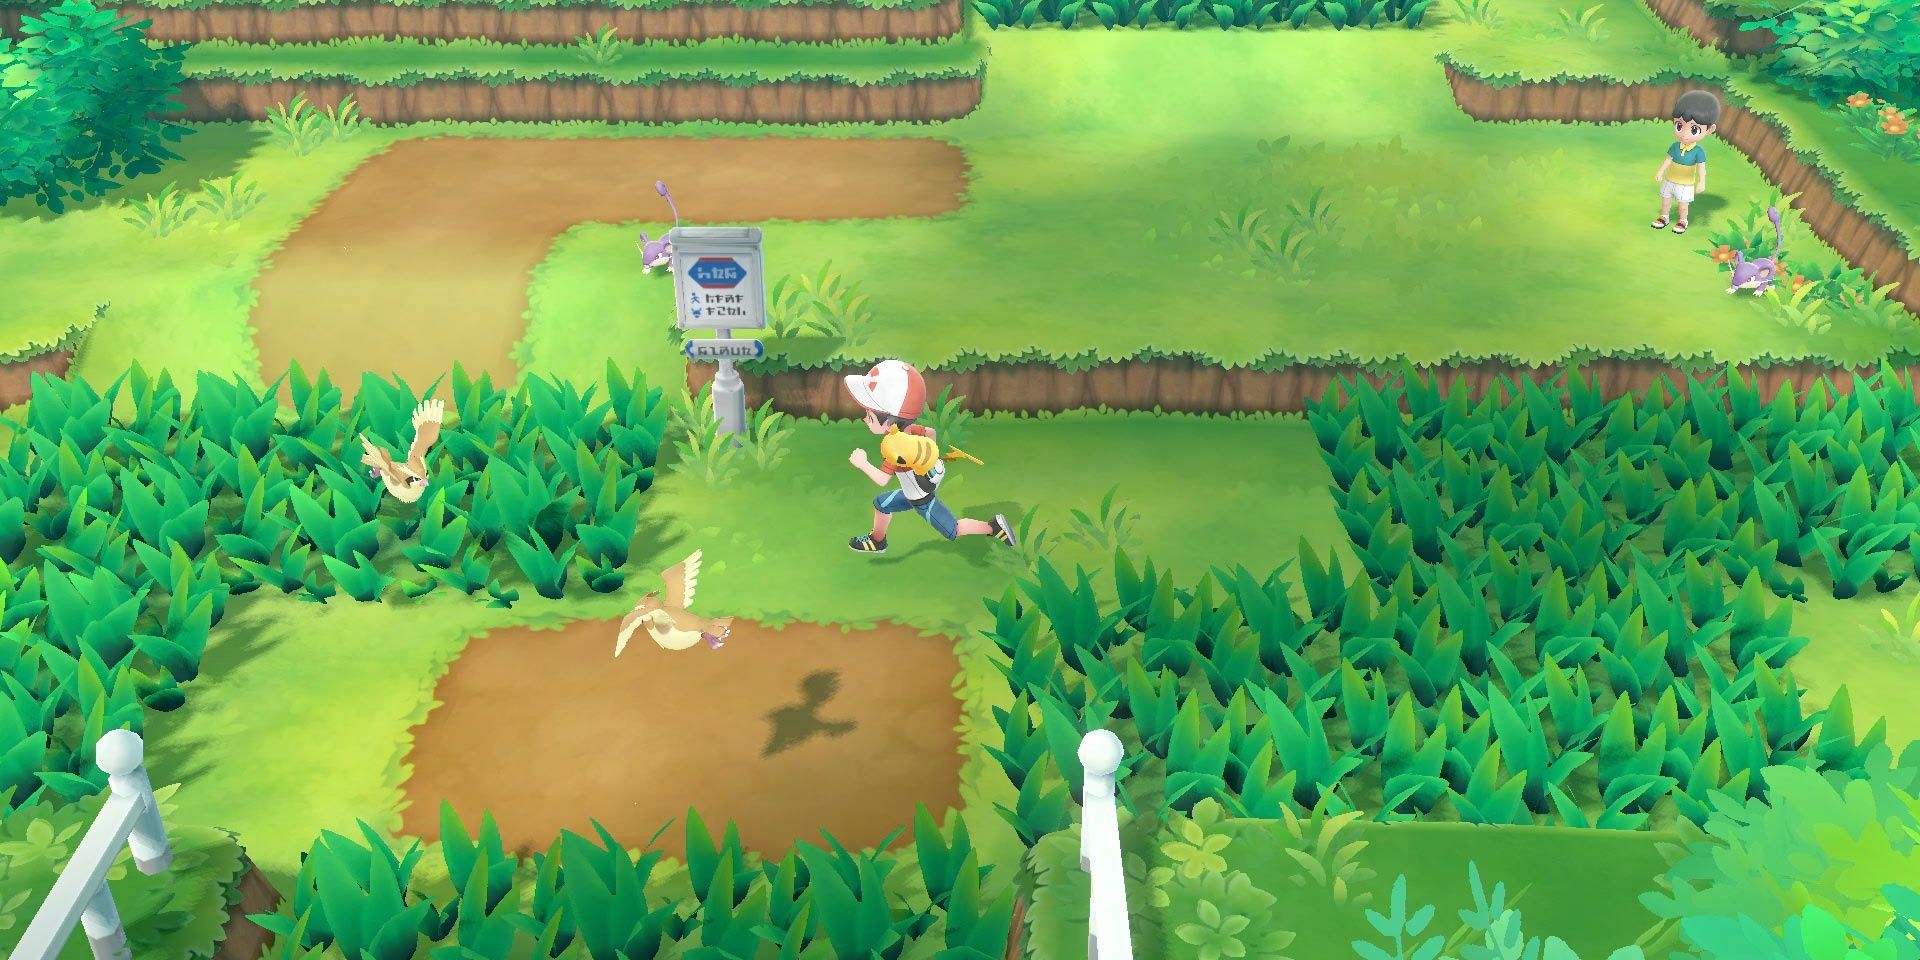 Walking through a wild area in Pokemon: Let's Go!